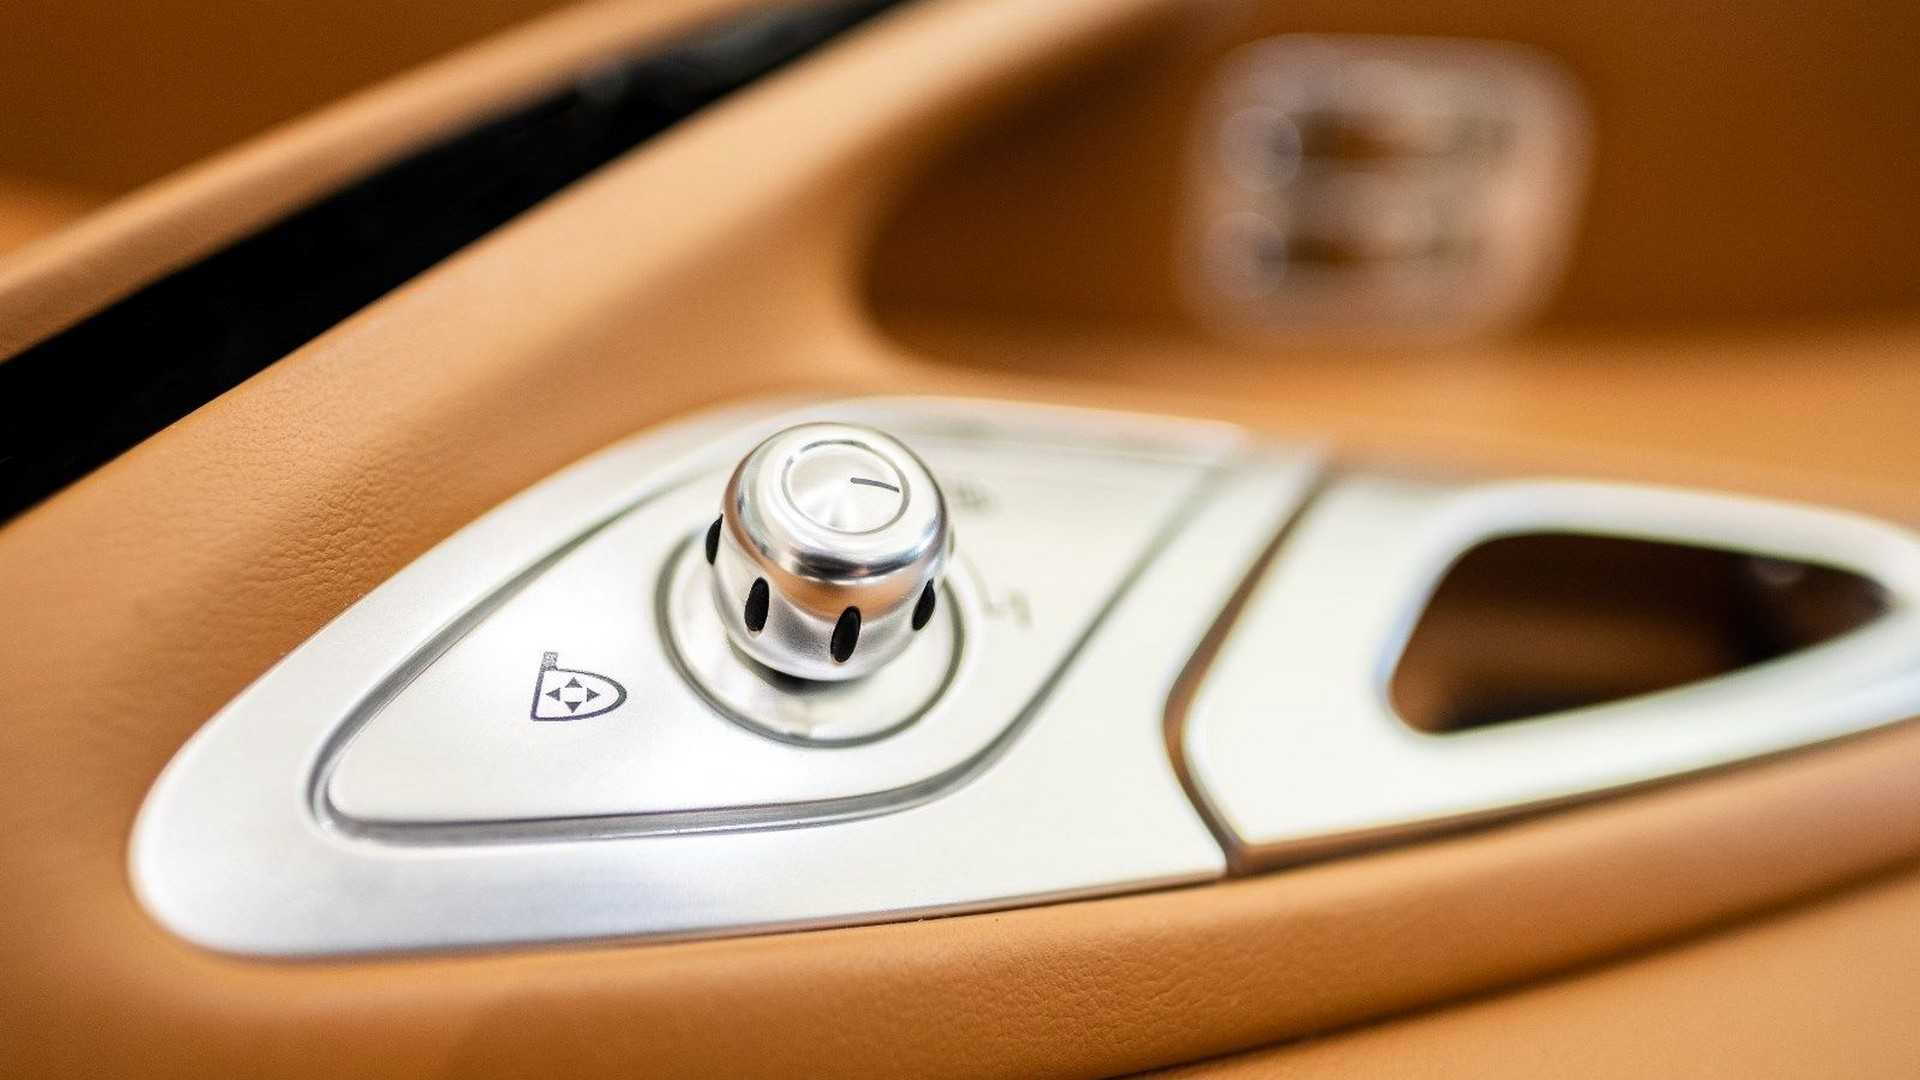 2008 Bugatti Veyron interior for sale